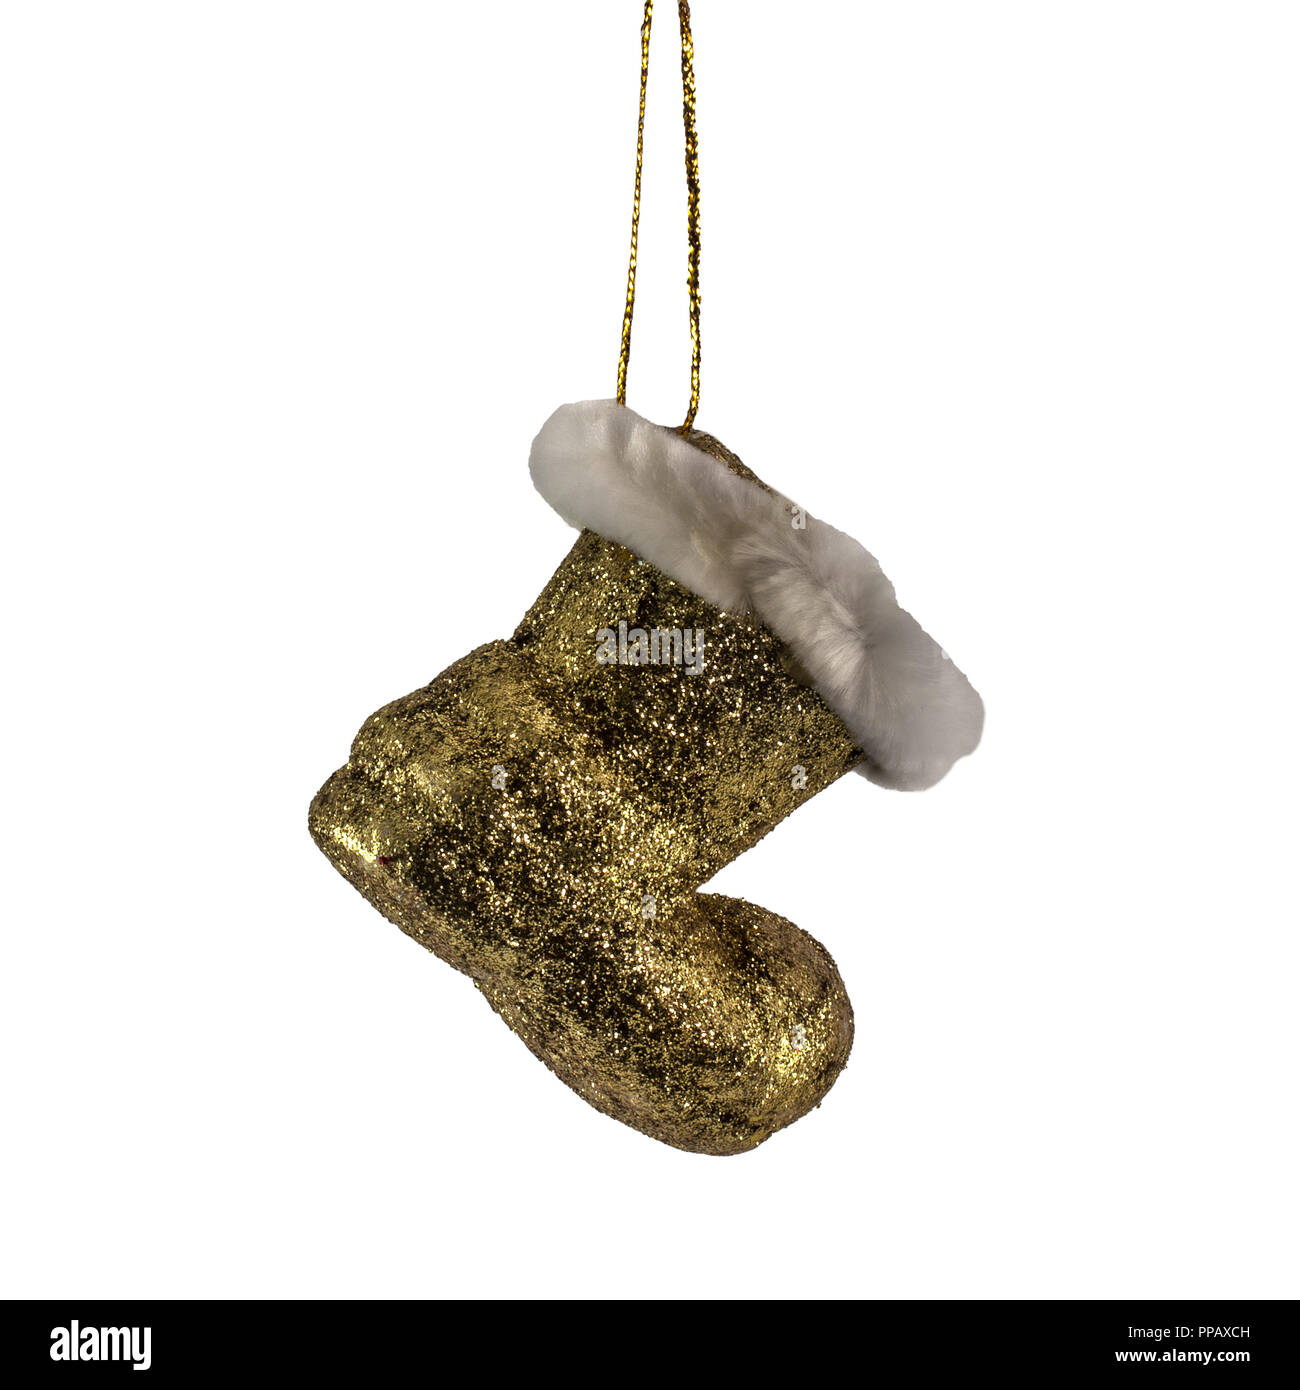 Gelbe Farbe Santa Claus stiefel Weihnachtsbaum Dekor Ornament auf weißem Hintergrund Stockfoto